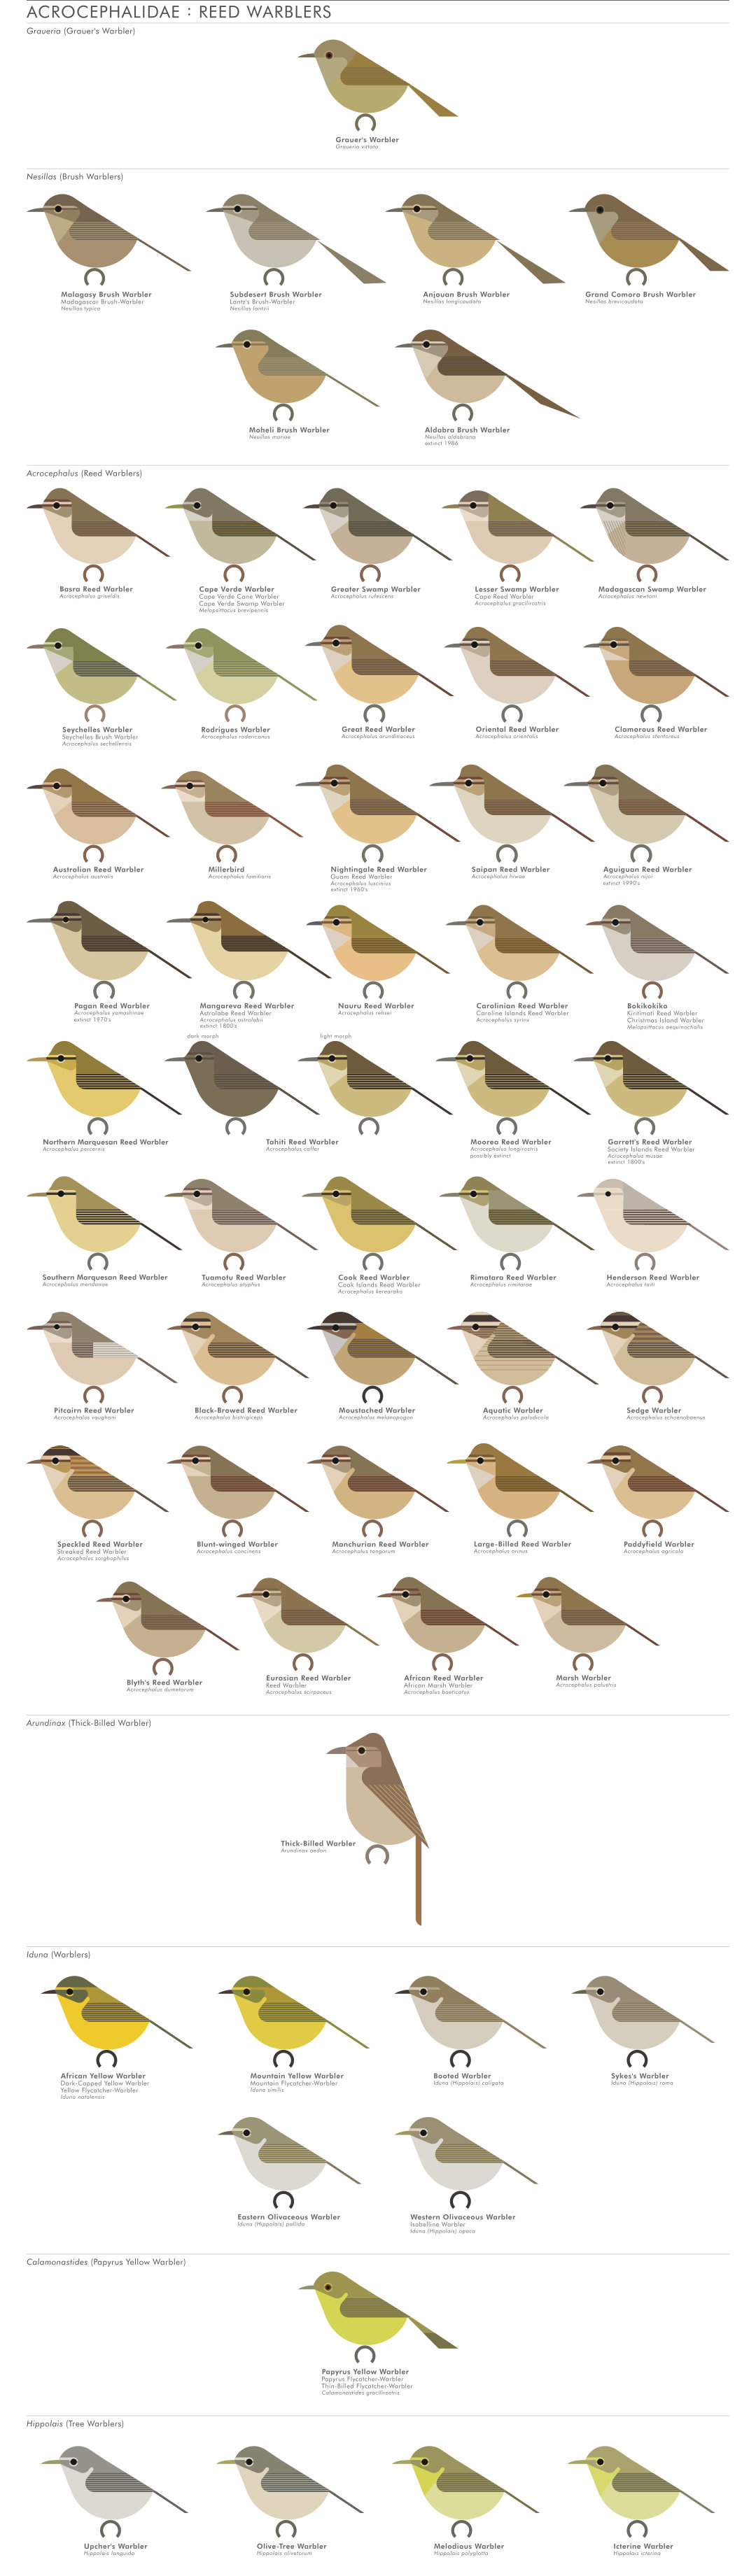 scott partridge - AVE - avian vector encyclopedia - reed warblers - bird vector art